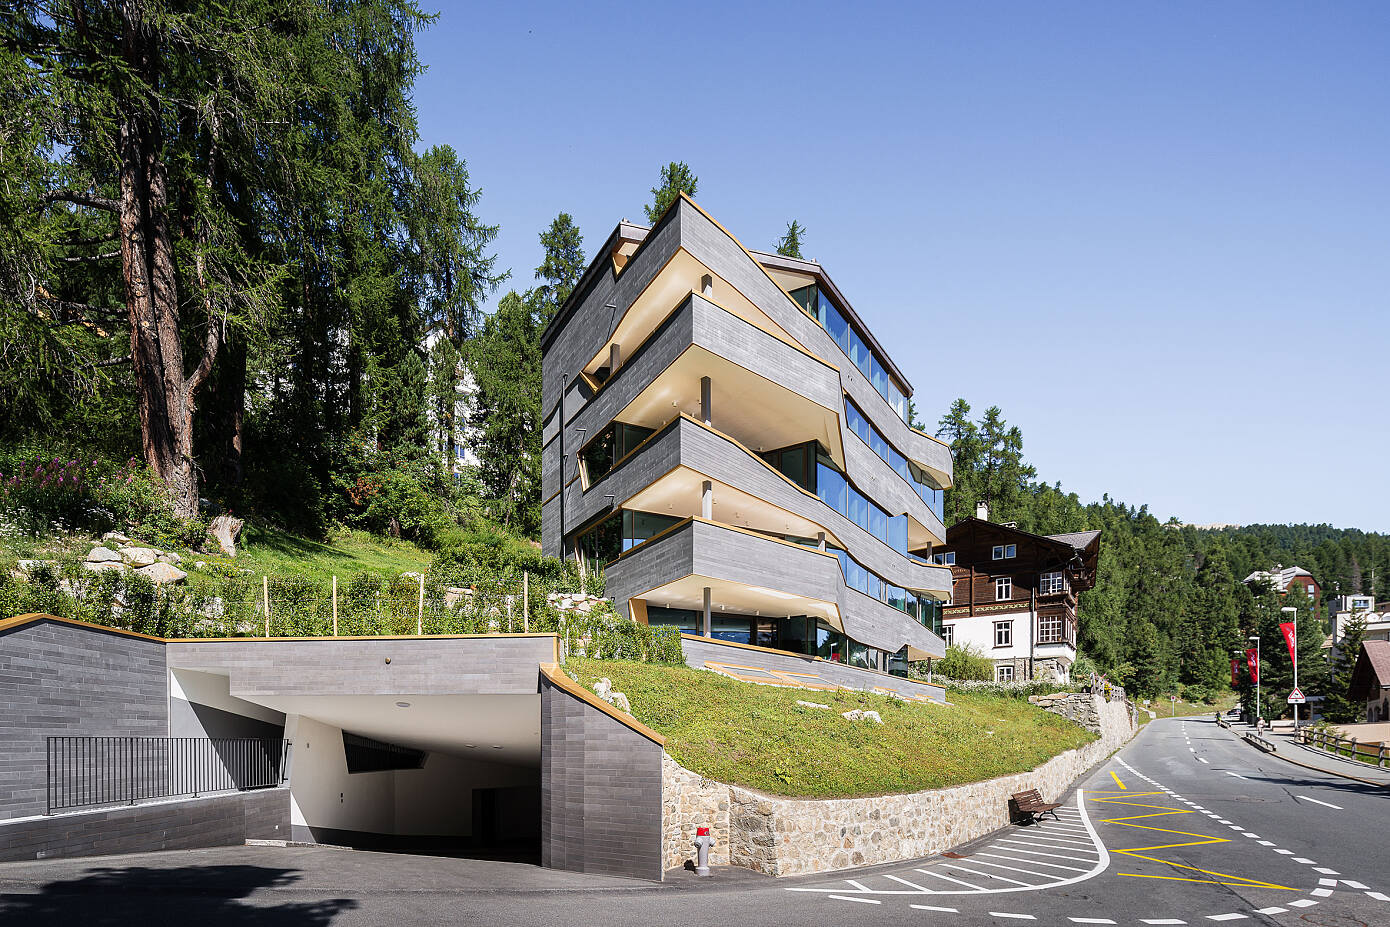 Grischun Mountain Residence St. Moritz by Gerd Schaller